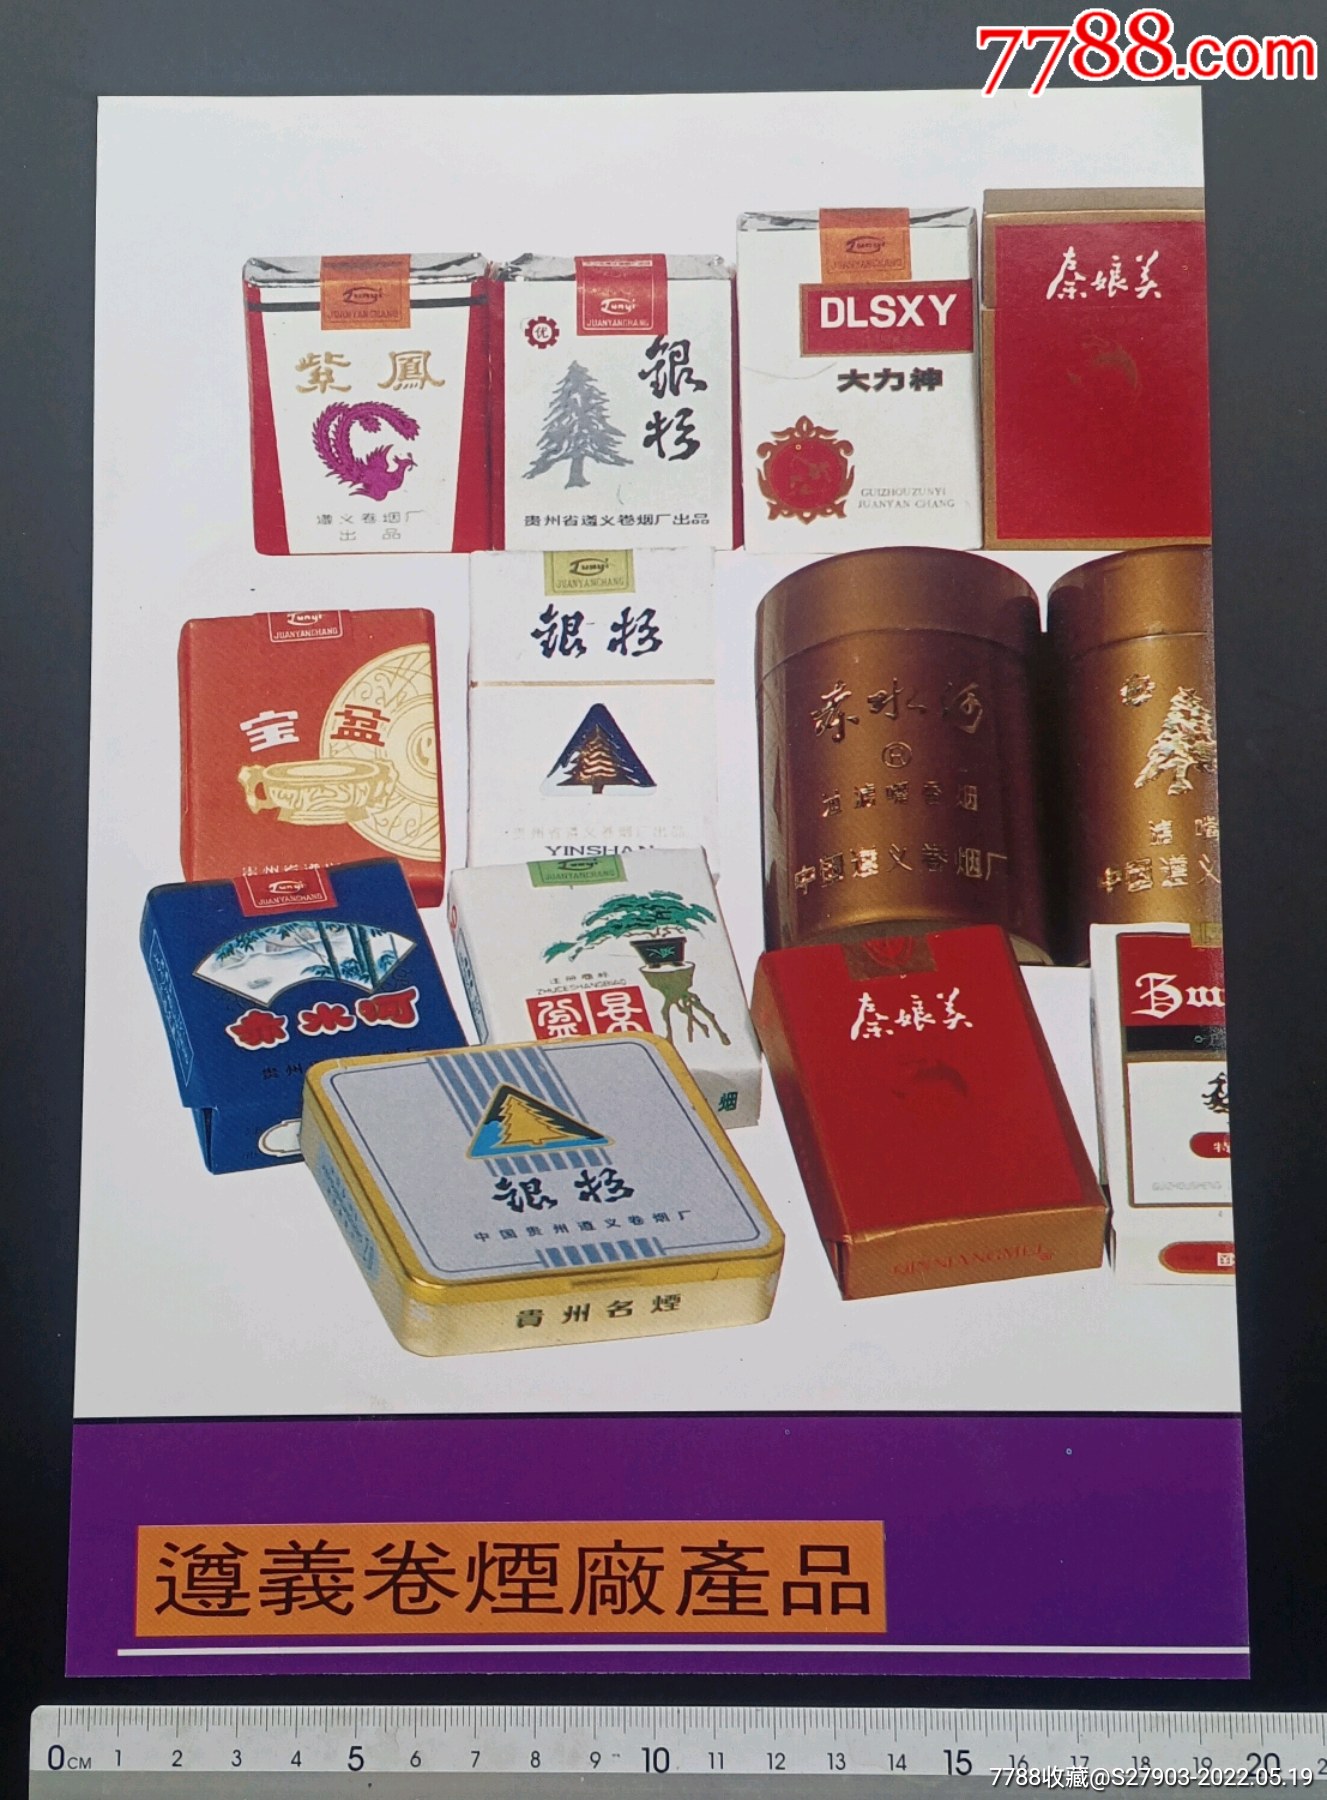 80年代中国贵阳卷烟一厂出品遵义牌香烟铁皮盒-价格:15元-se86035715-铁皮盒/铁筒-零售-7788收藏__收藏热线